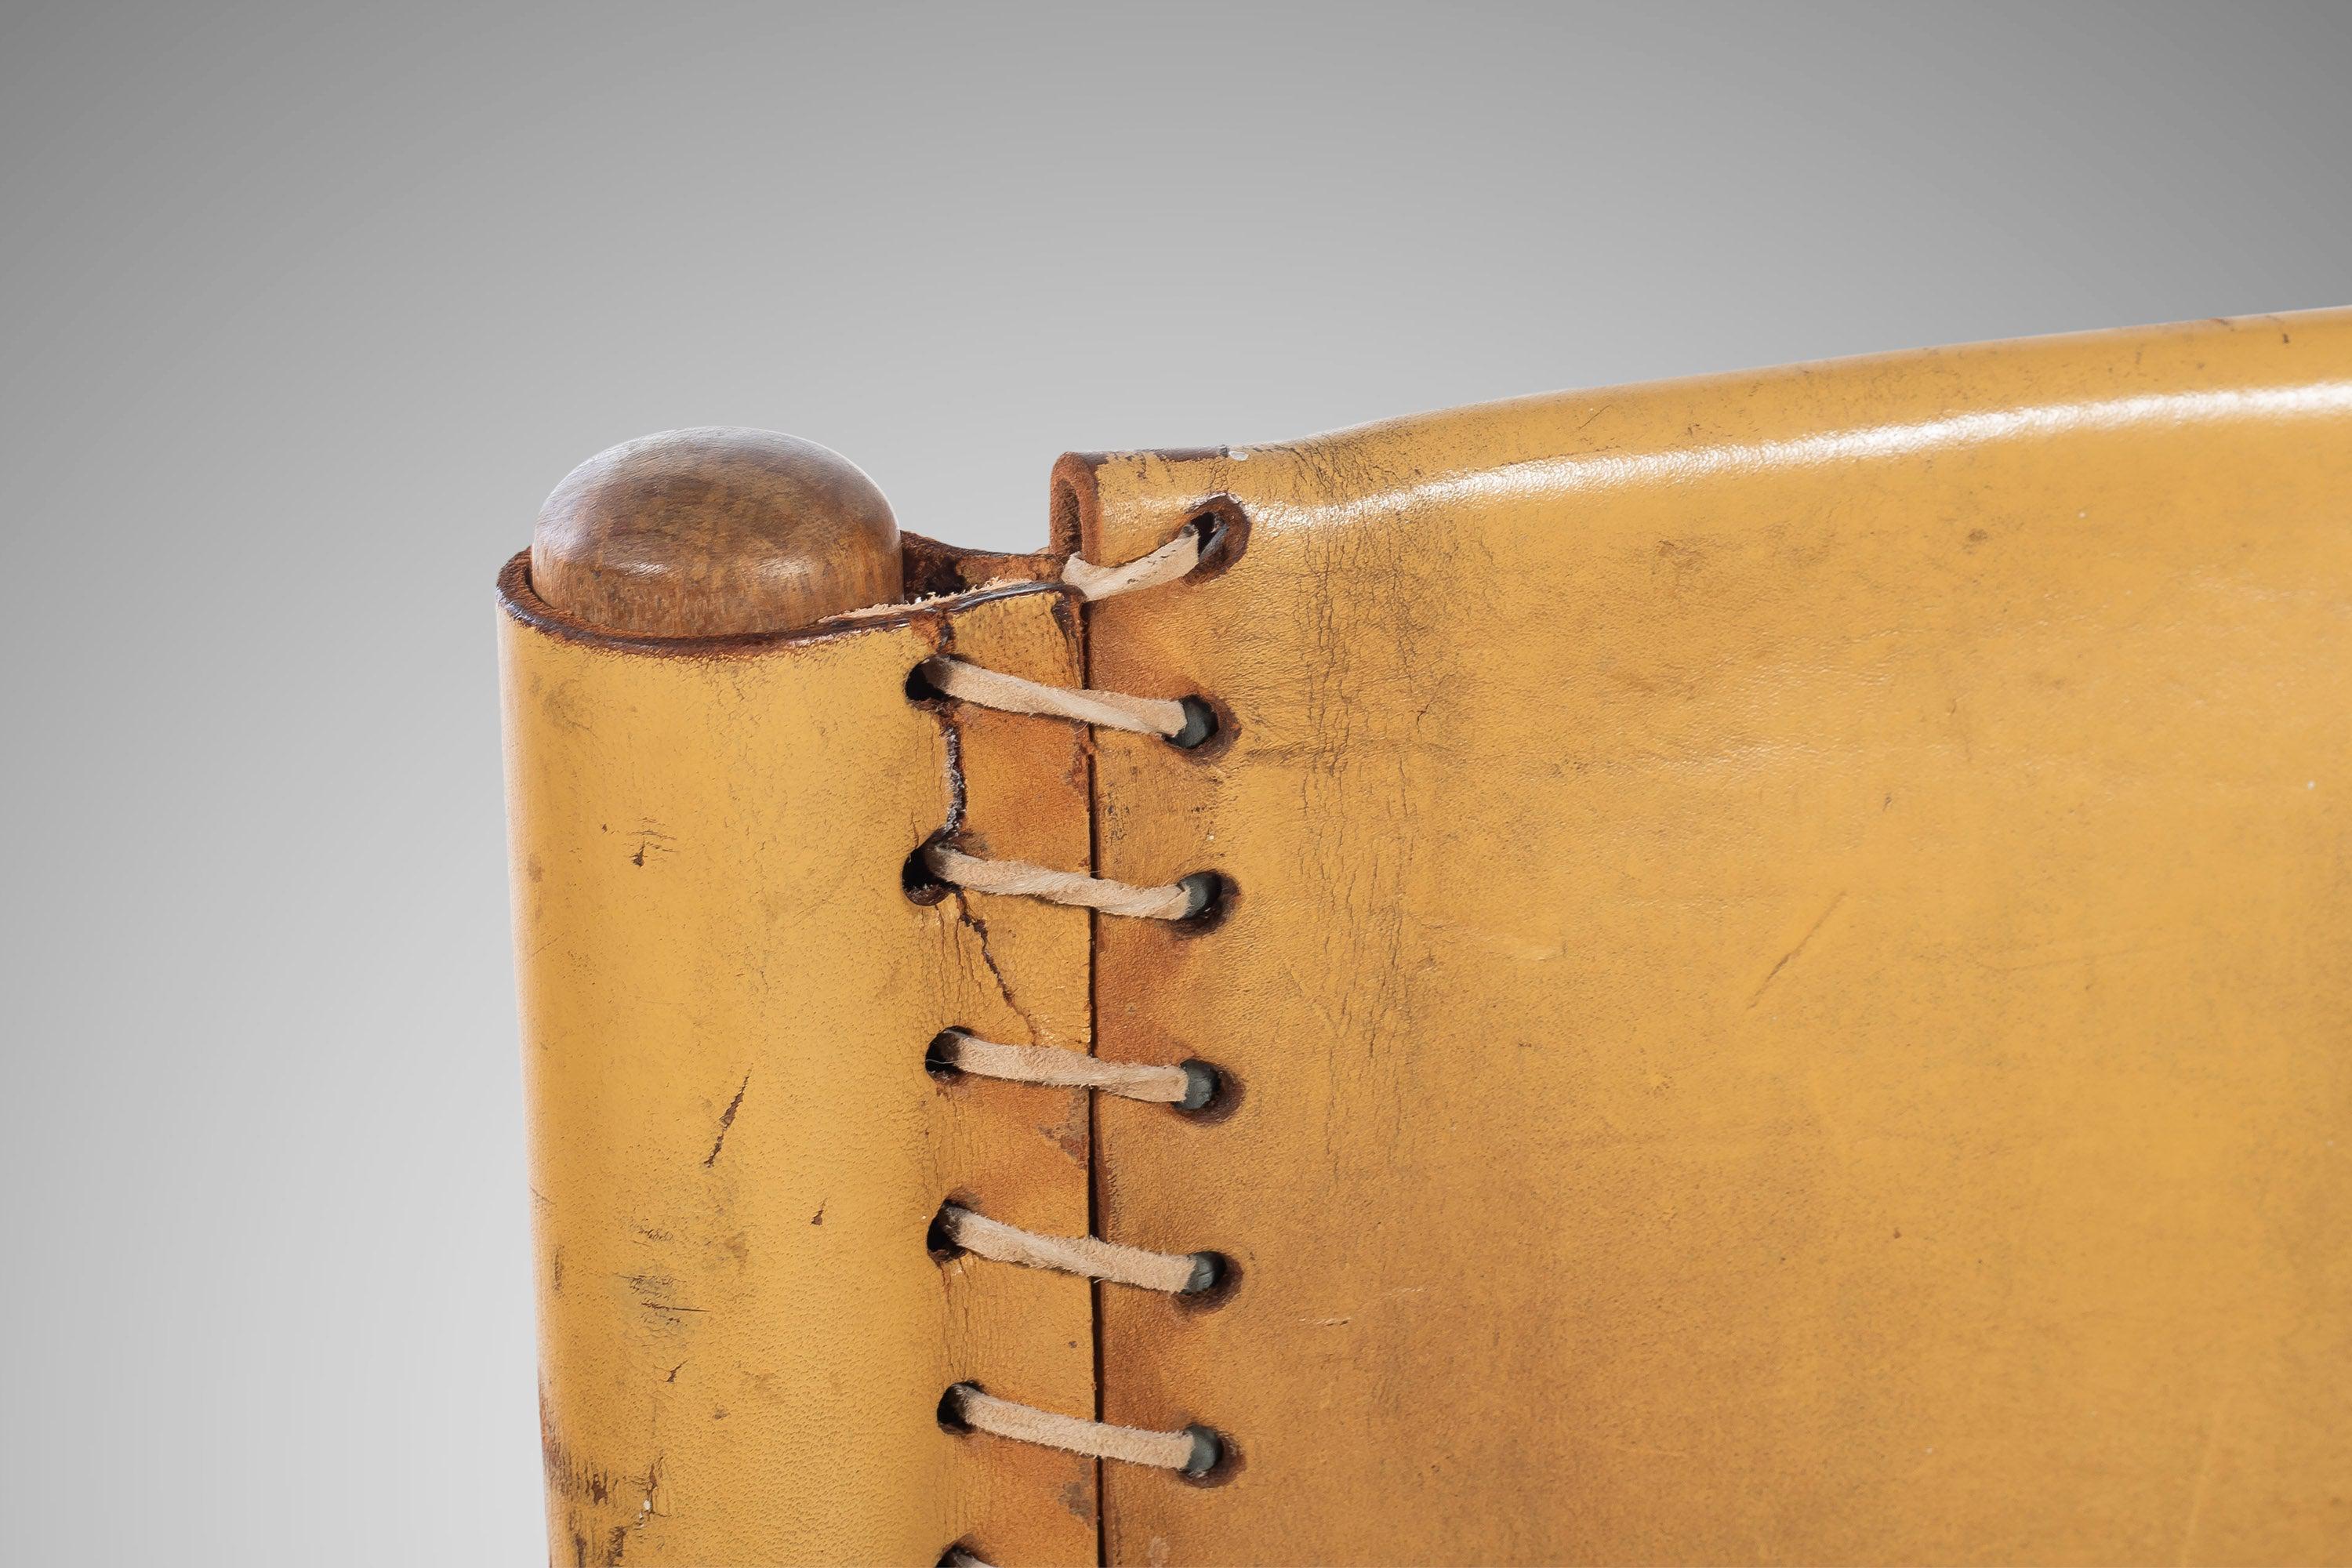 Chaise d'appoint originale des années 1960 en cuir sellé tanné de Colombie et en bois de teck et de noyer blanc séché au four, conçue par Beirmann Werner pour la société Arte Sano. Également appelés 